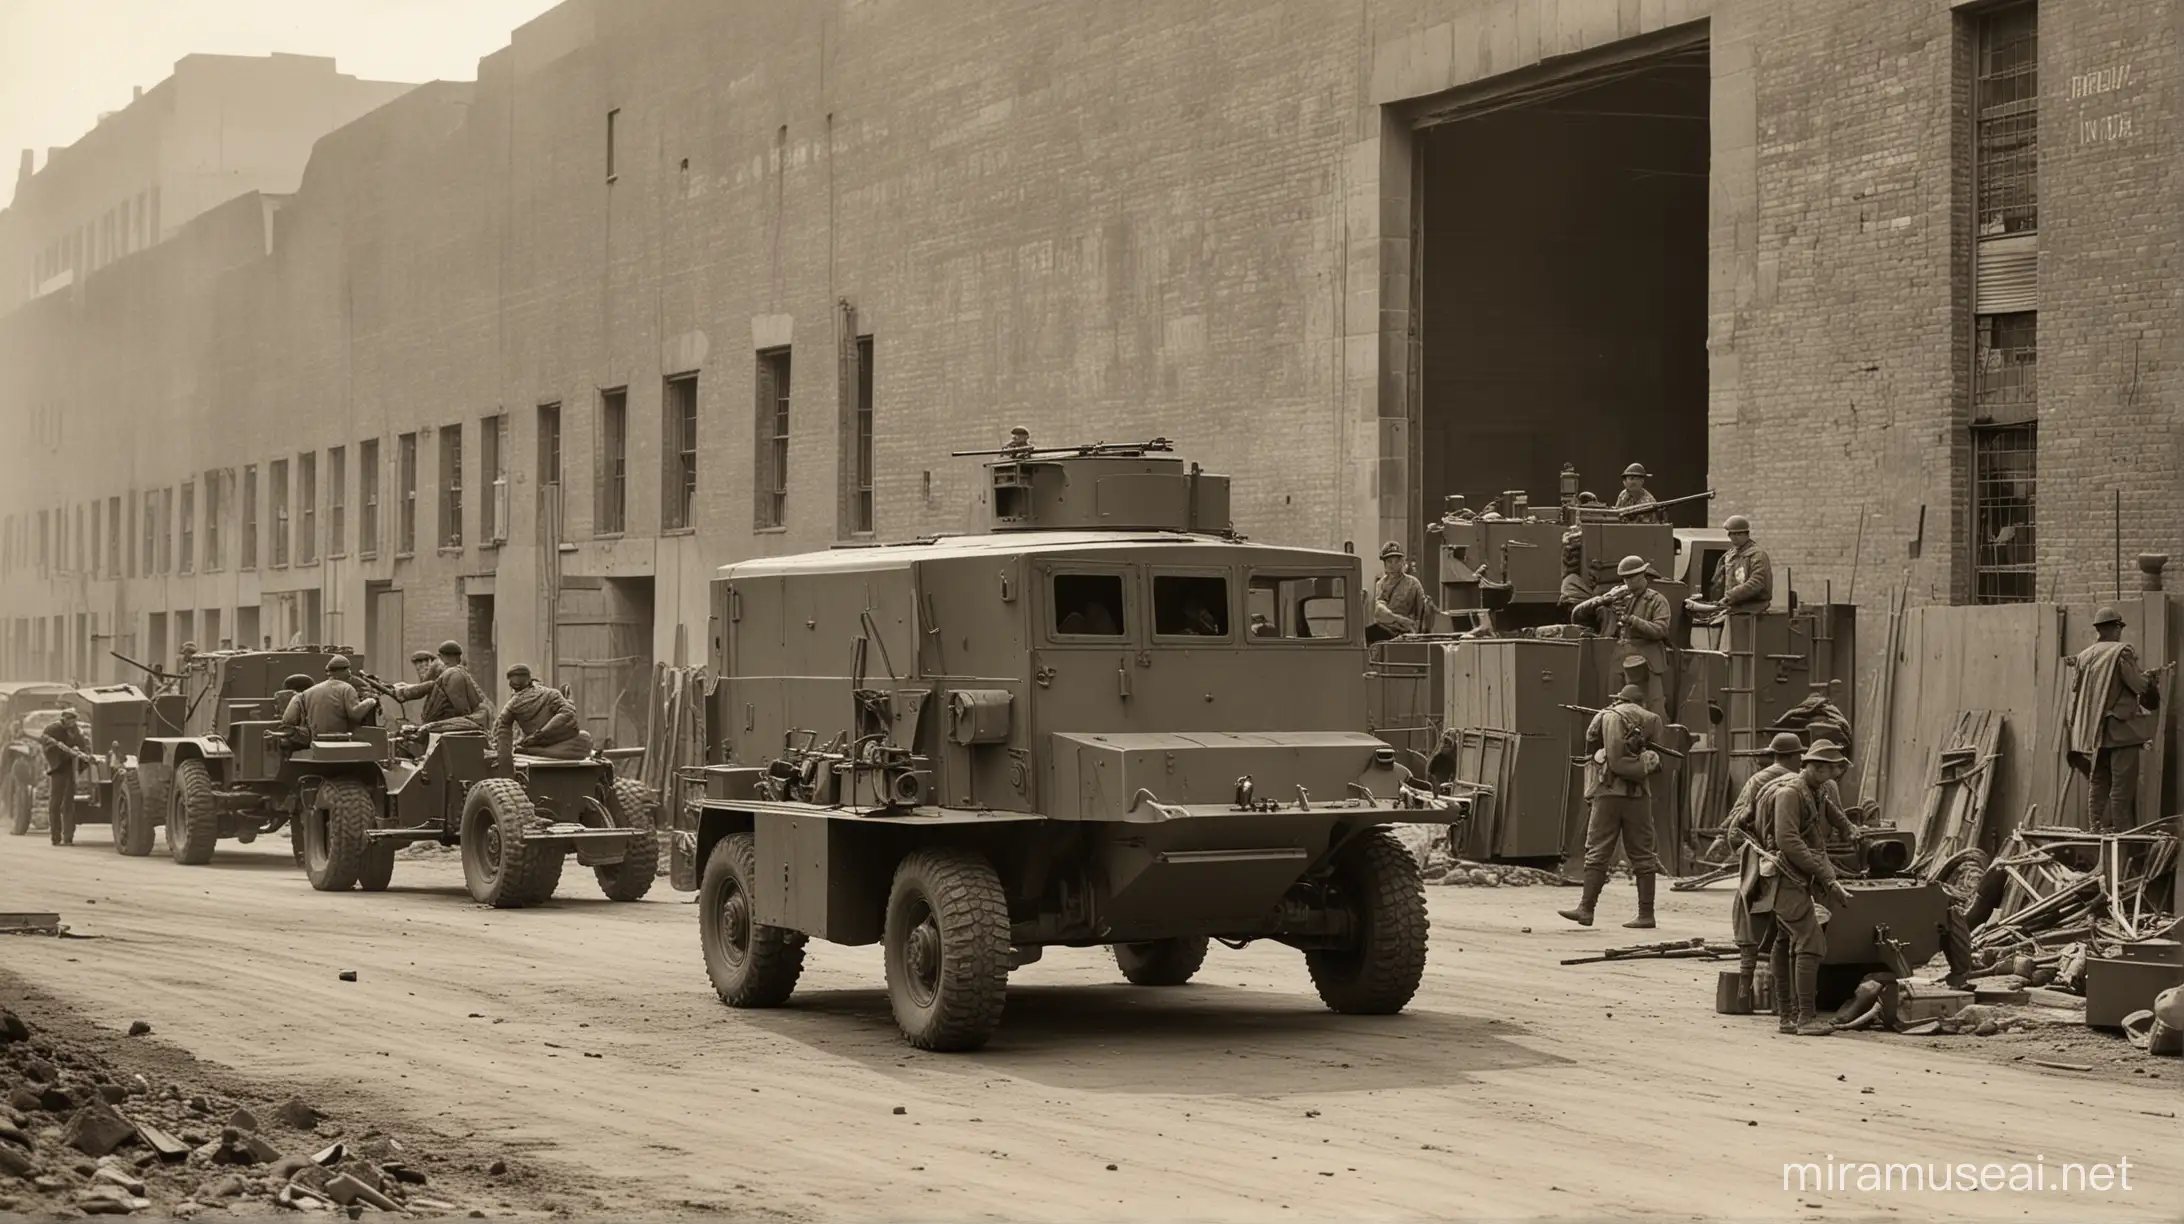 Galpão com uma camionete blindada equipada com uma metralhadora de grosso calibre, e militares observando os operadores trabalhanndo. Ano de 1914 fotografia 